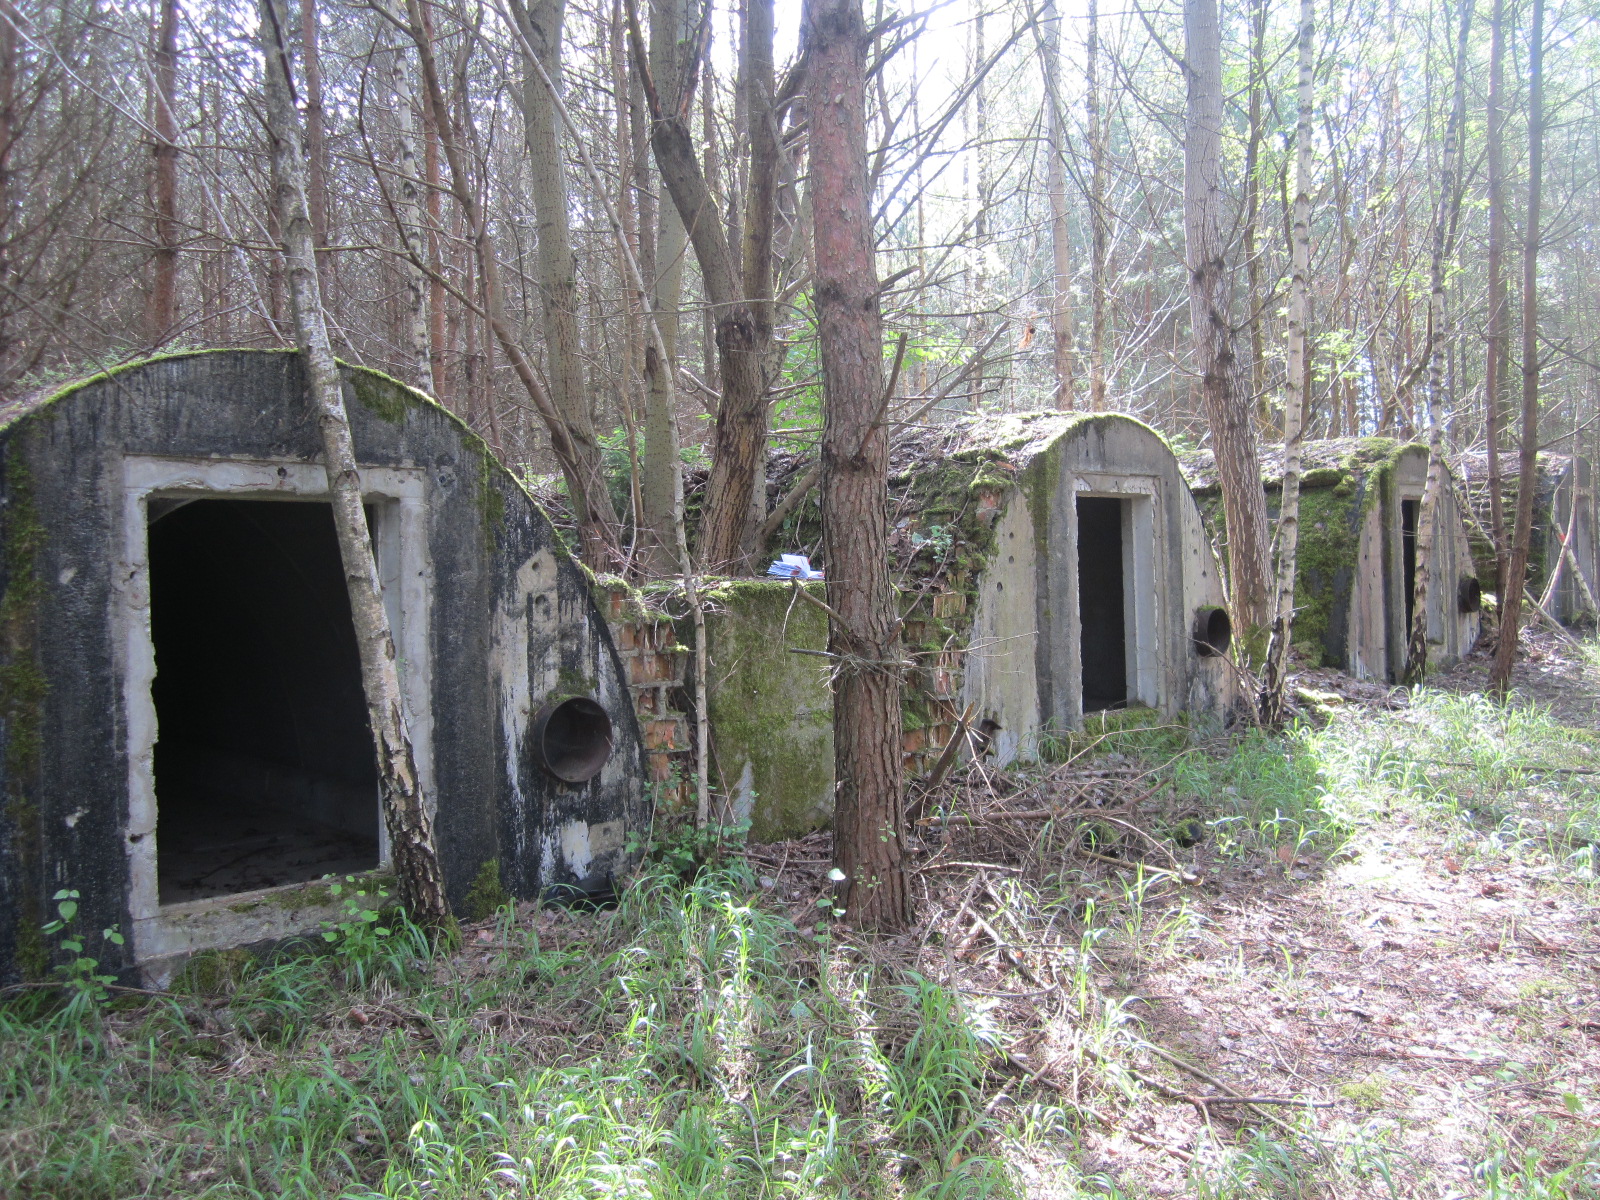 Alter NVA-Bunker vor dem Umbau